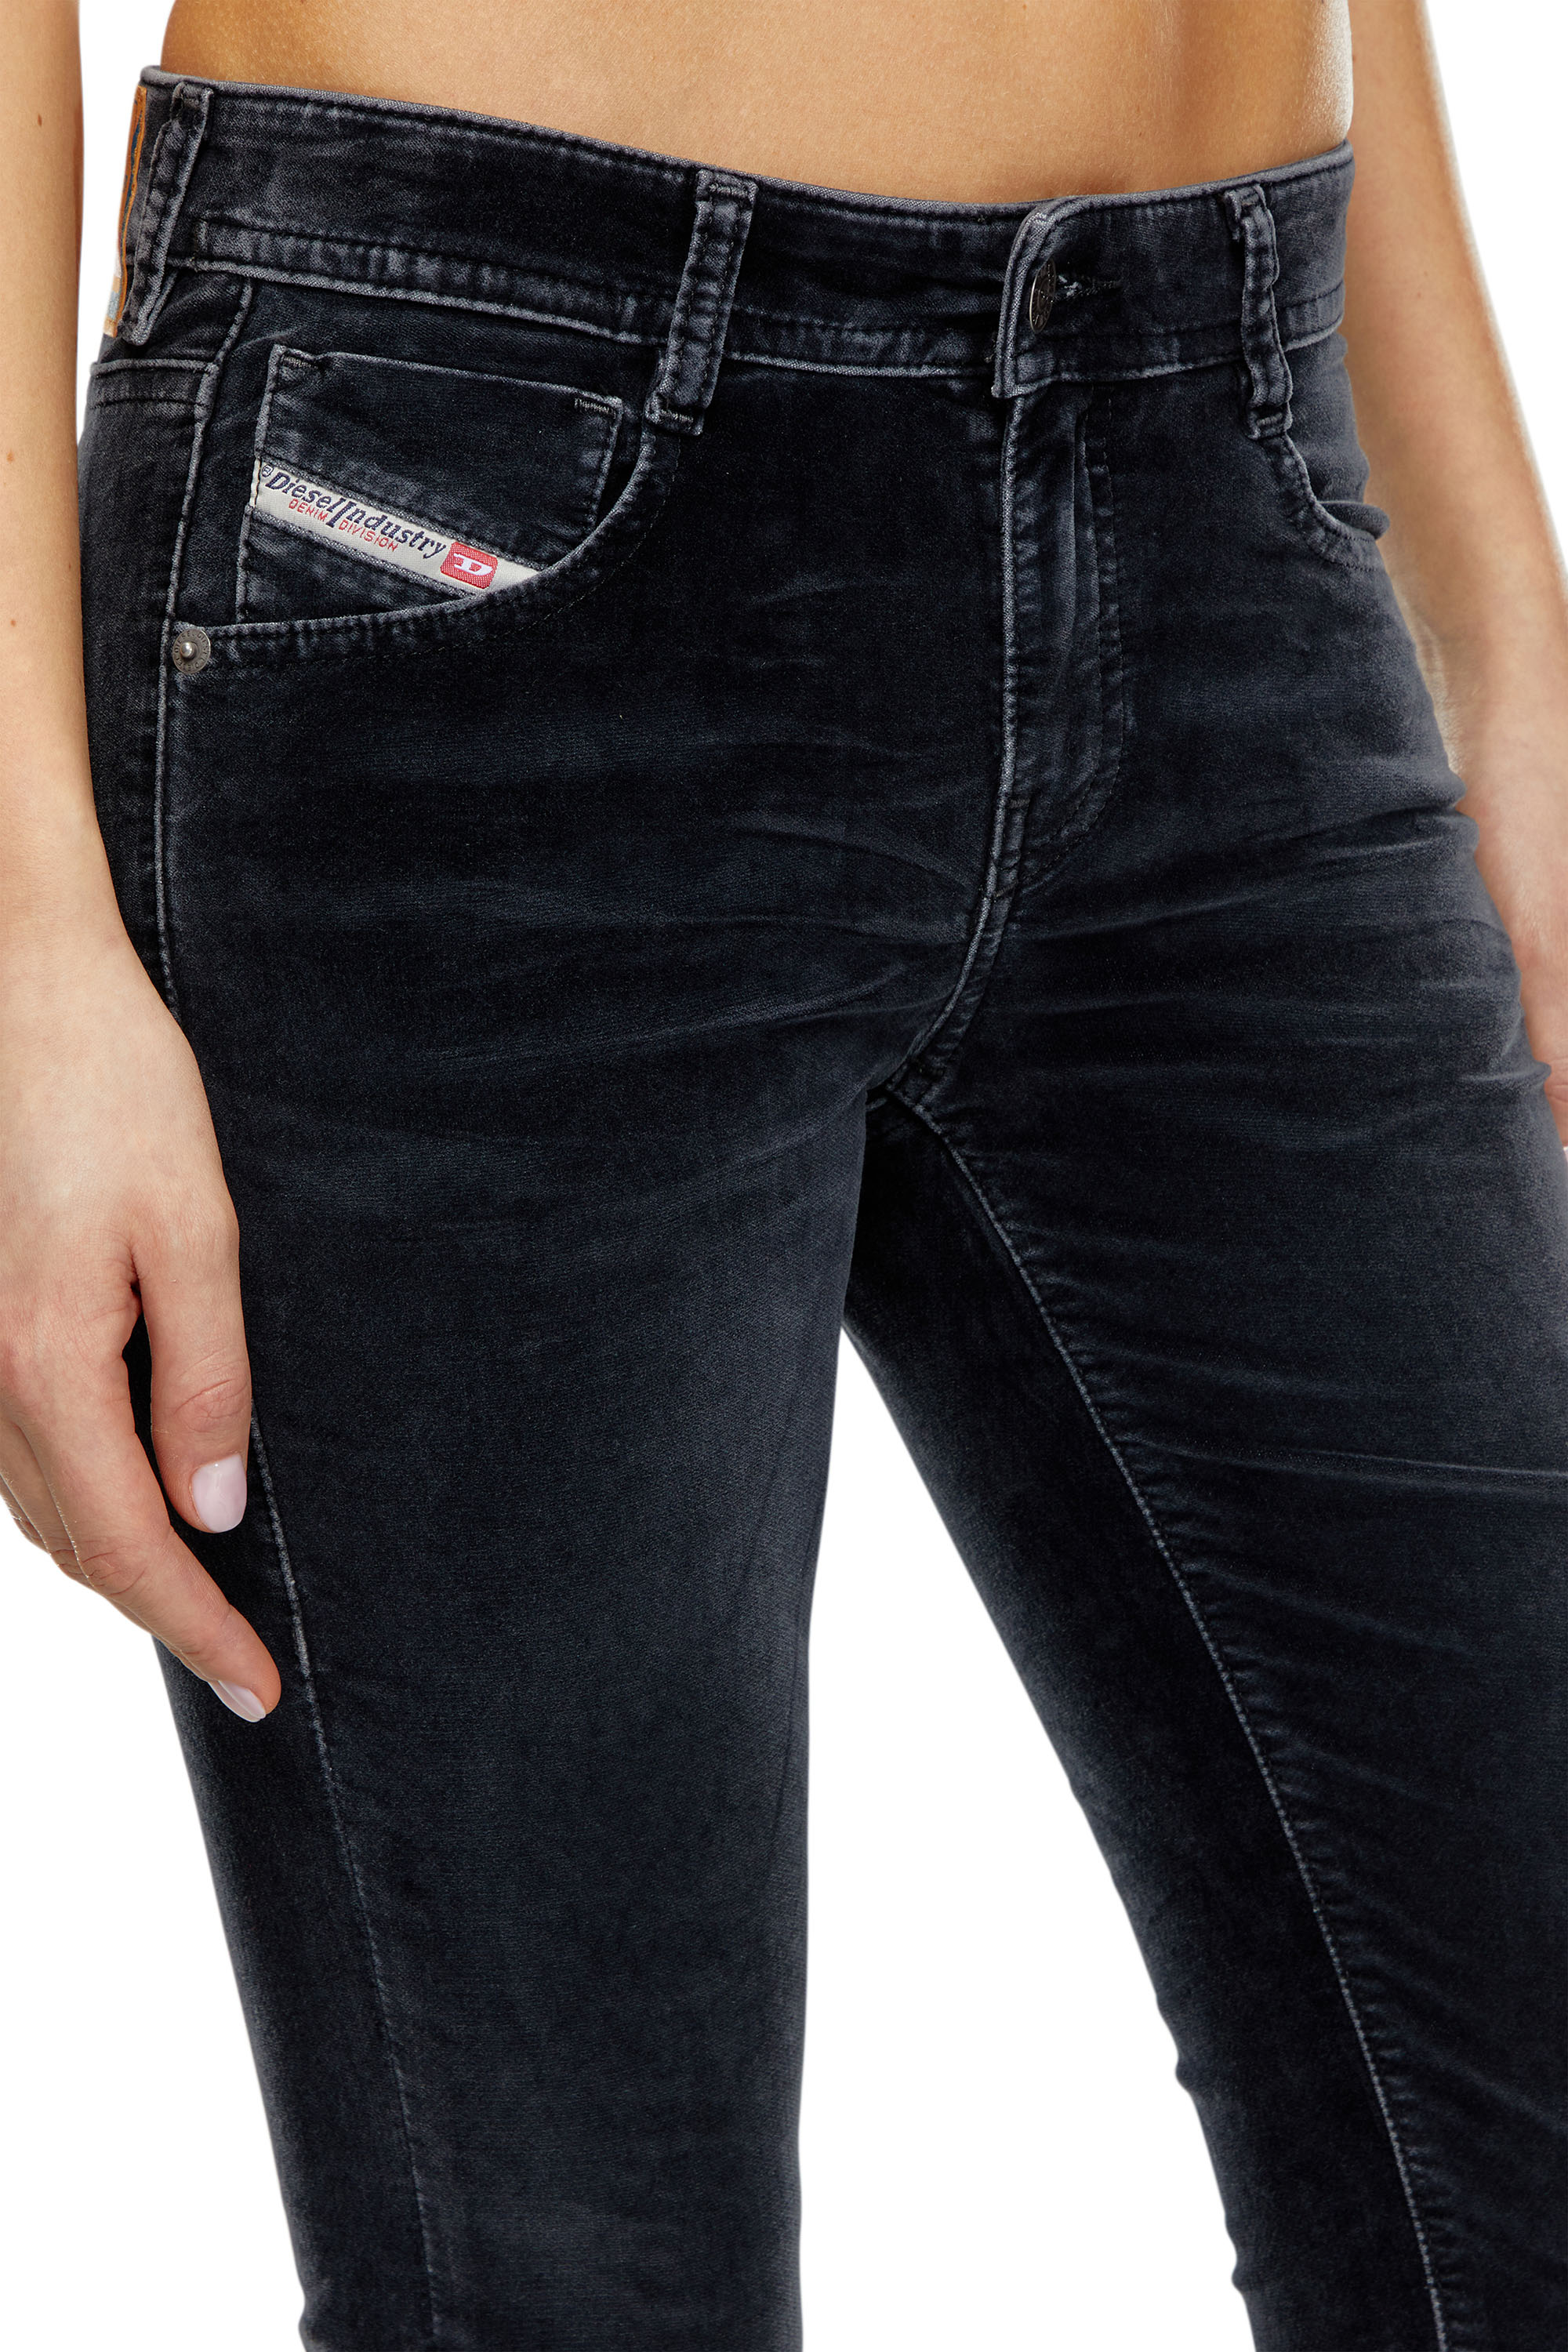 Women's Bootcut Jeans Low Cut Dark Blue Wash Five Pocket Style Belt Include  6-14